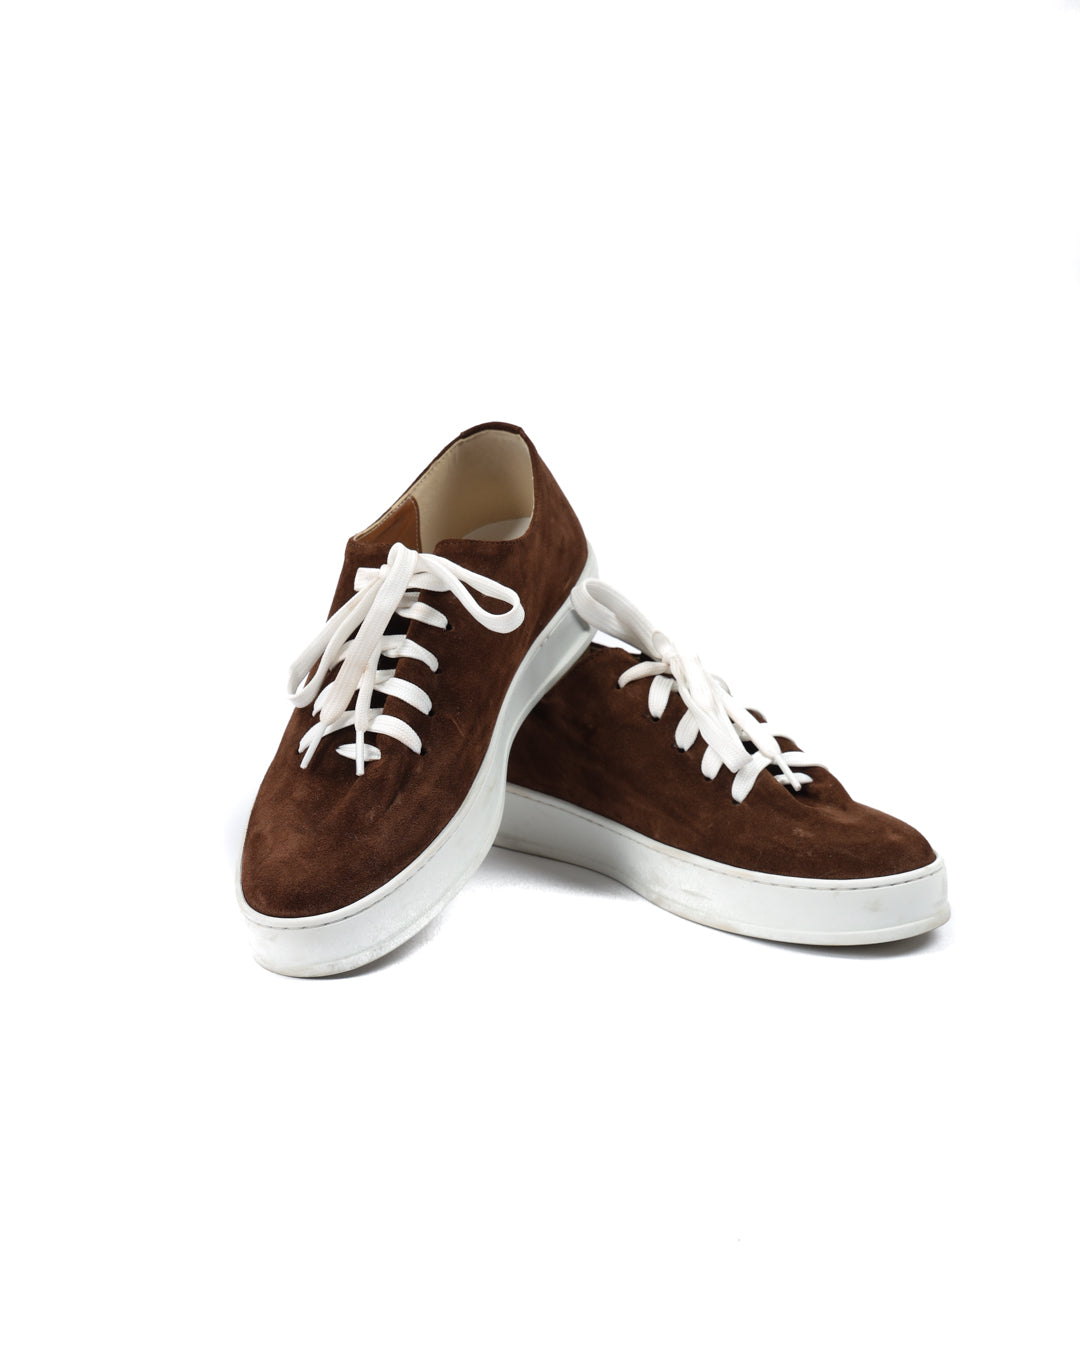 Steph - Dark brown suede sneakers